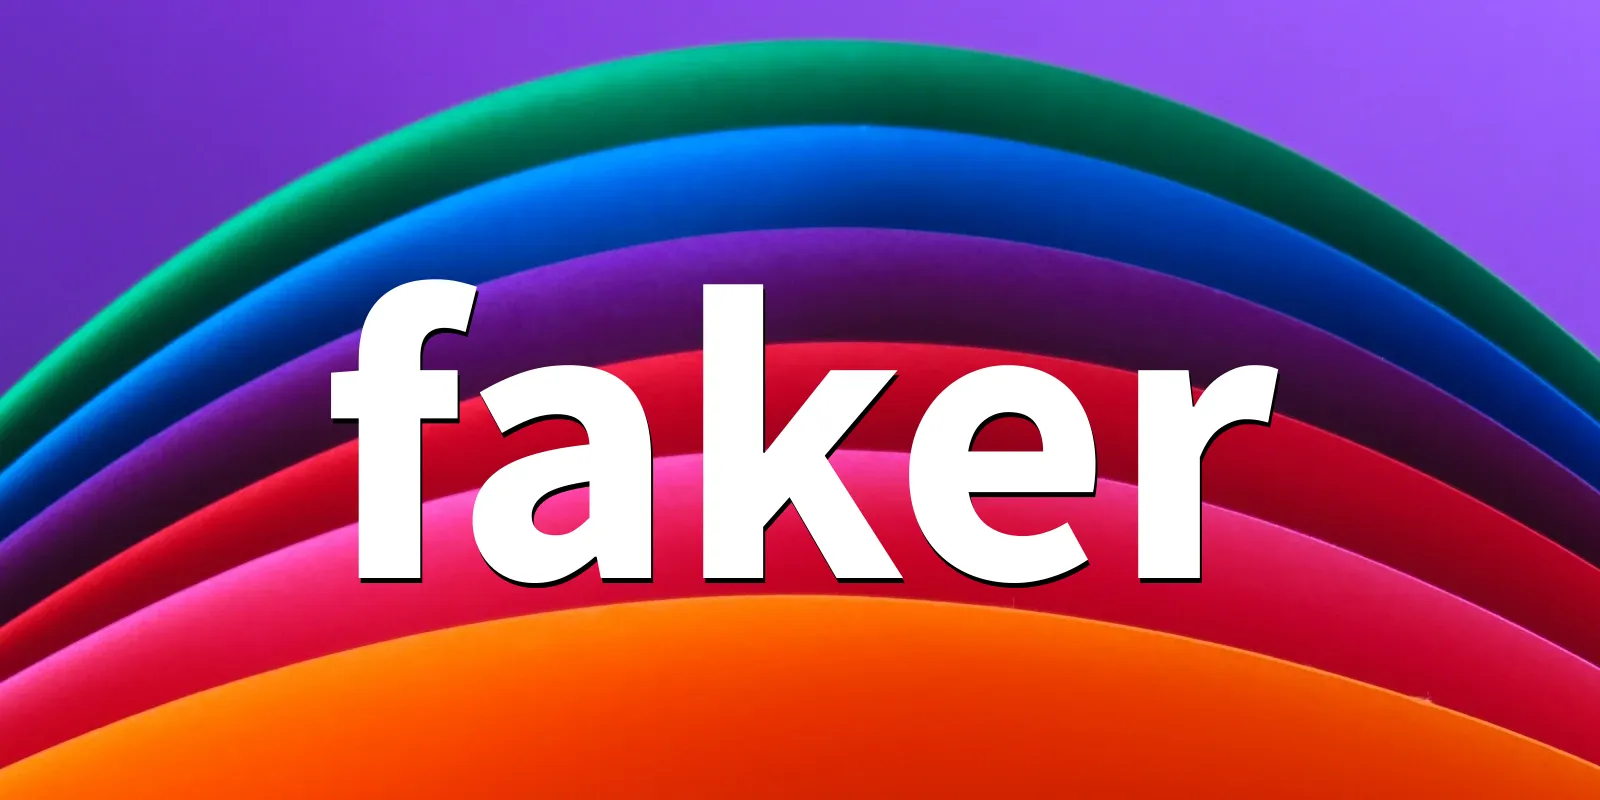 /pkg/f/faker/faker-banner.webp